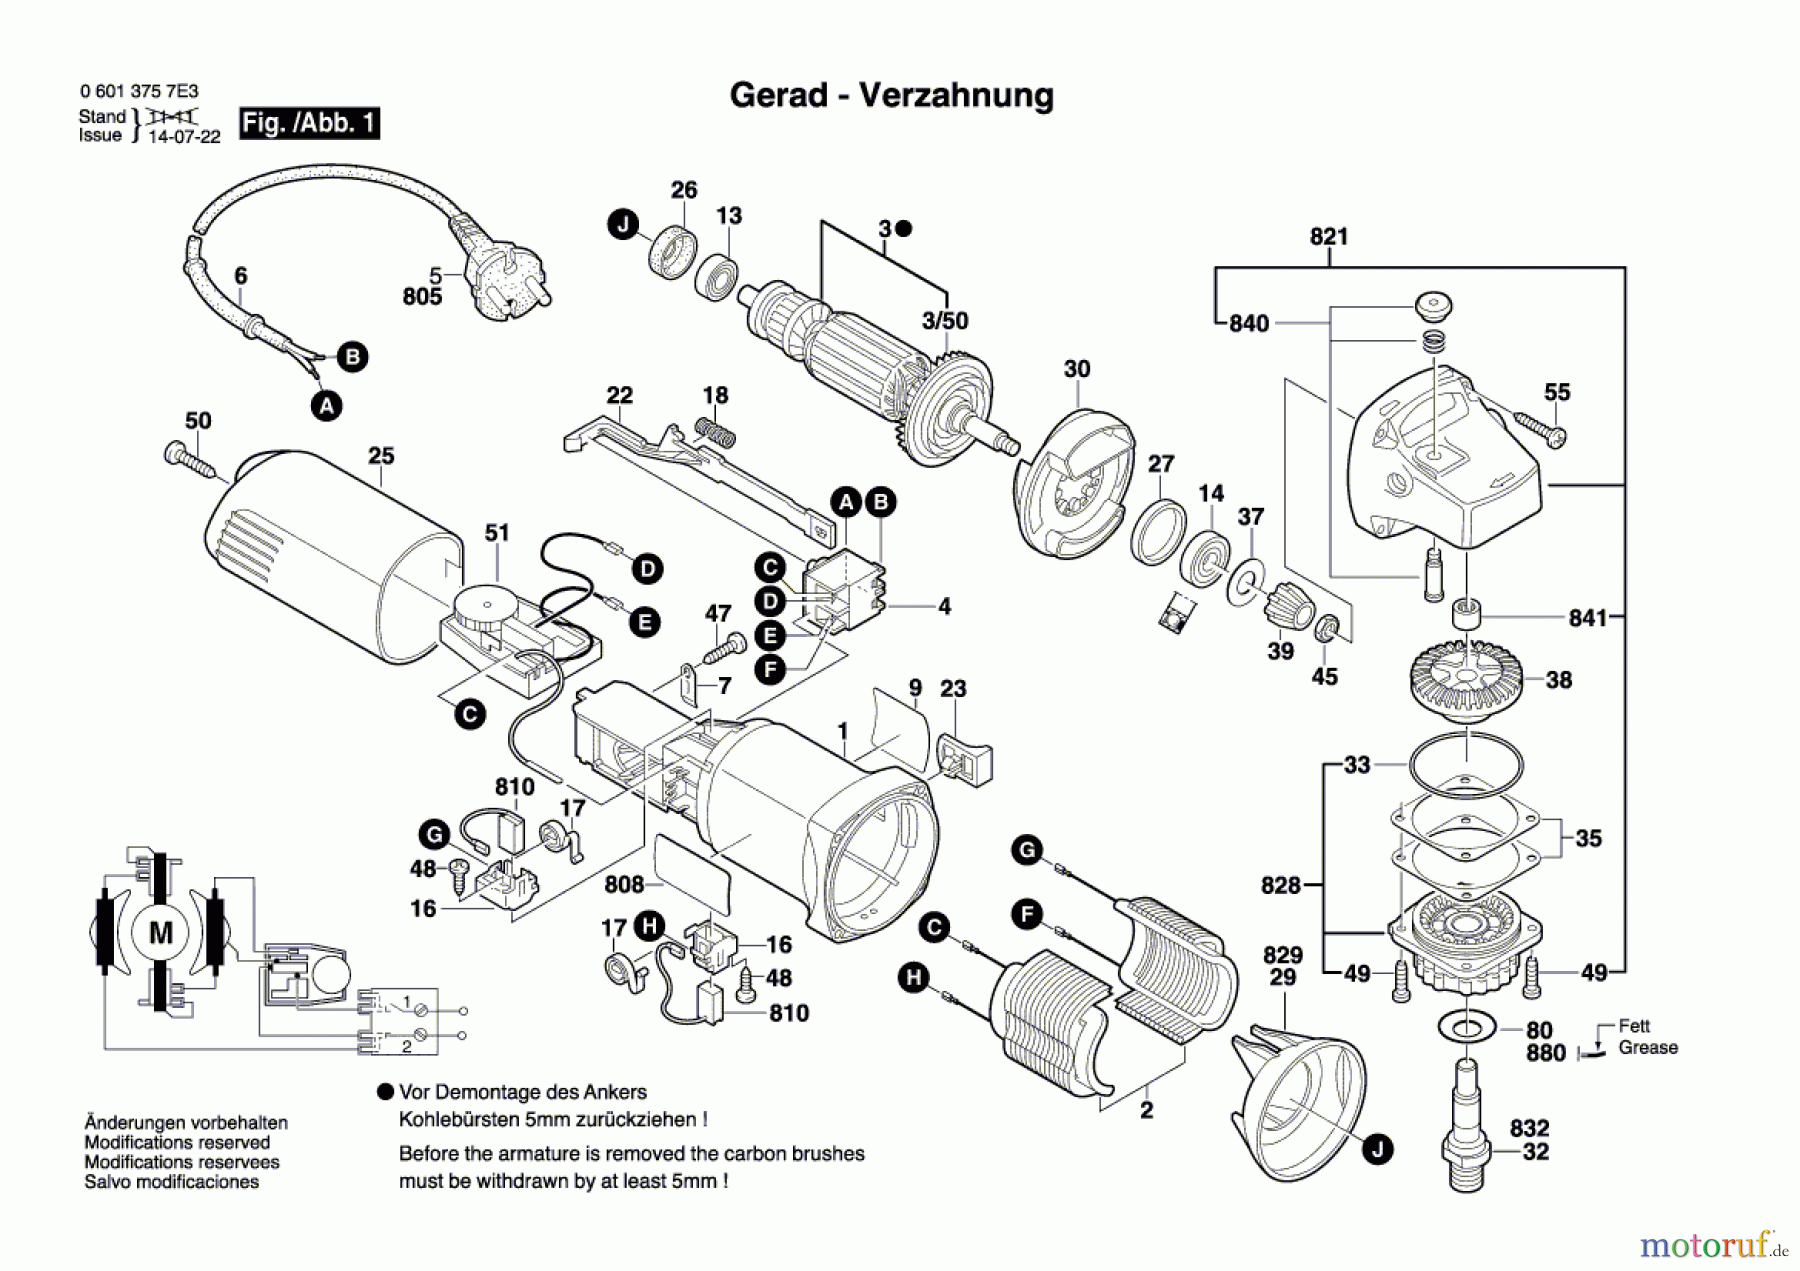  Bosch Werkzeug Winkelschleifer GWS 6-100 E Seite 1